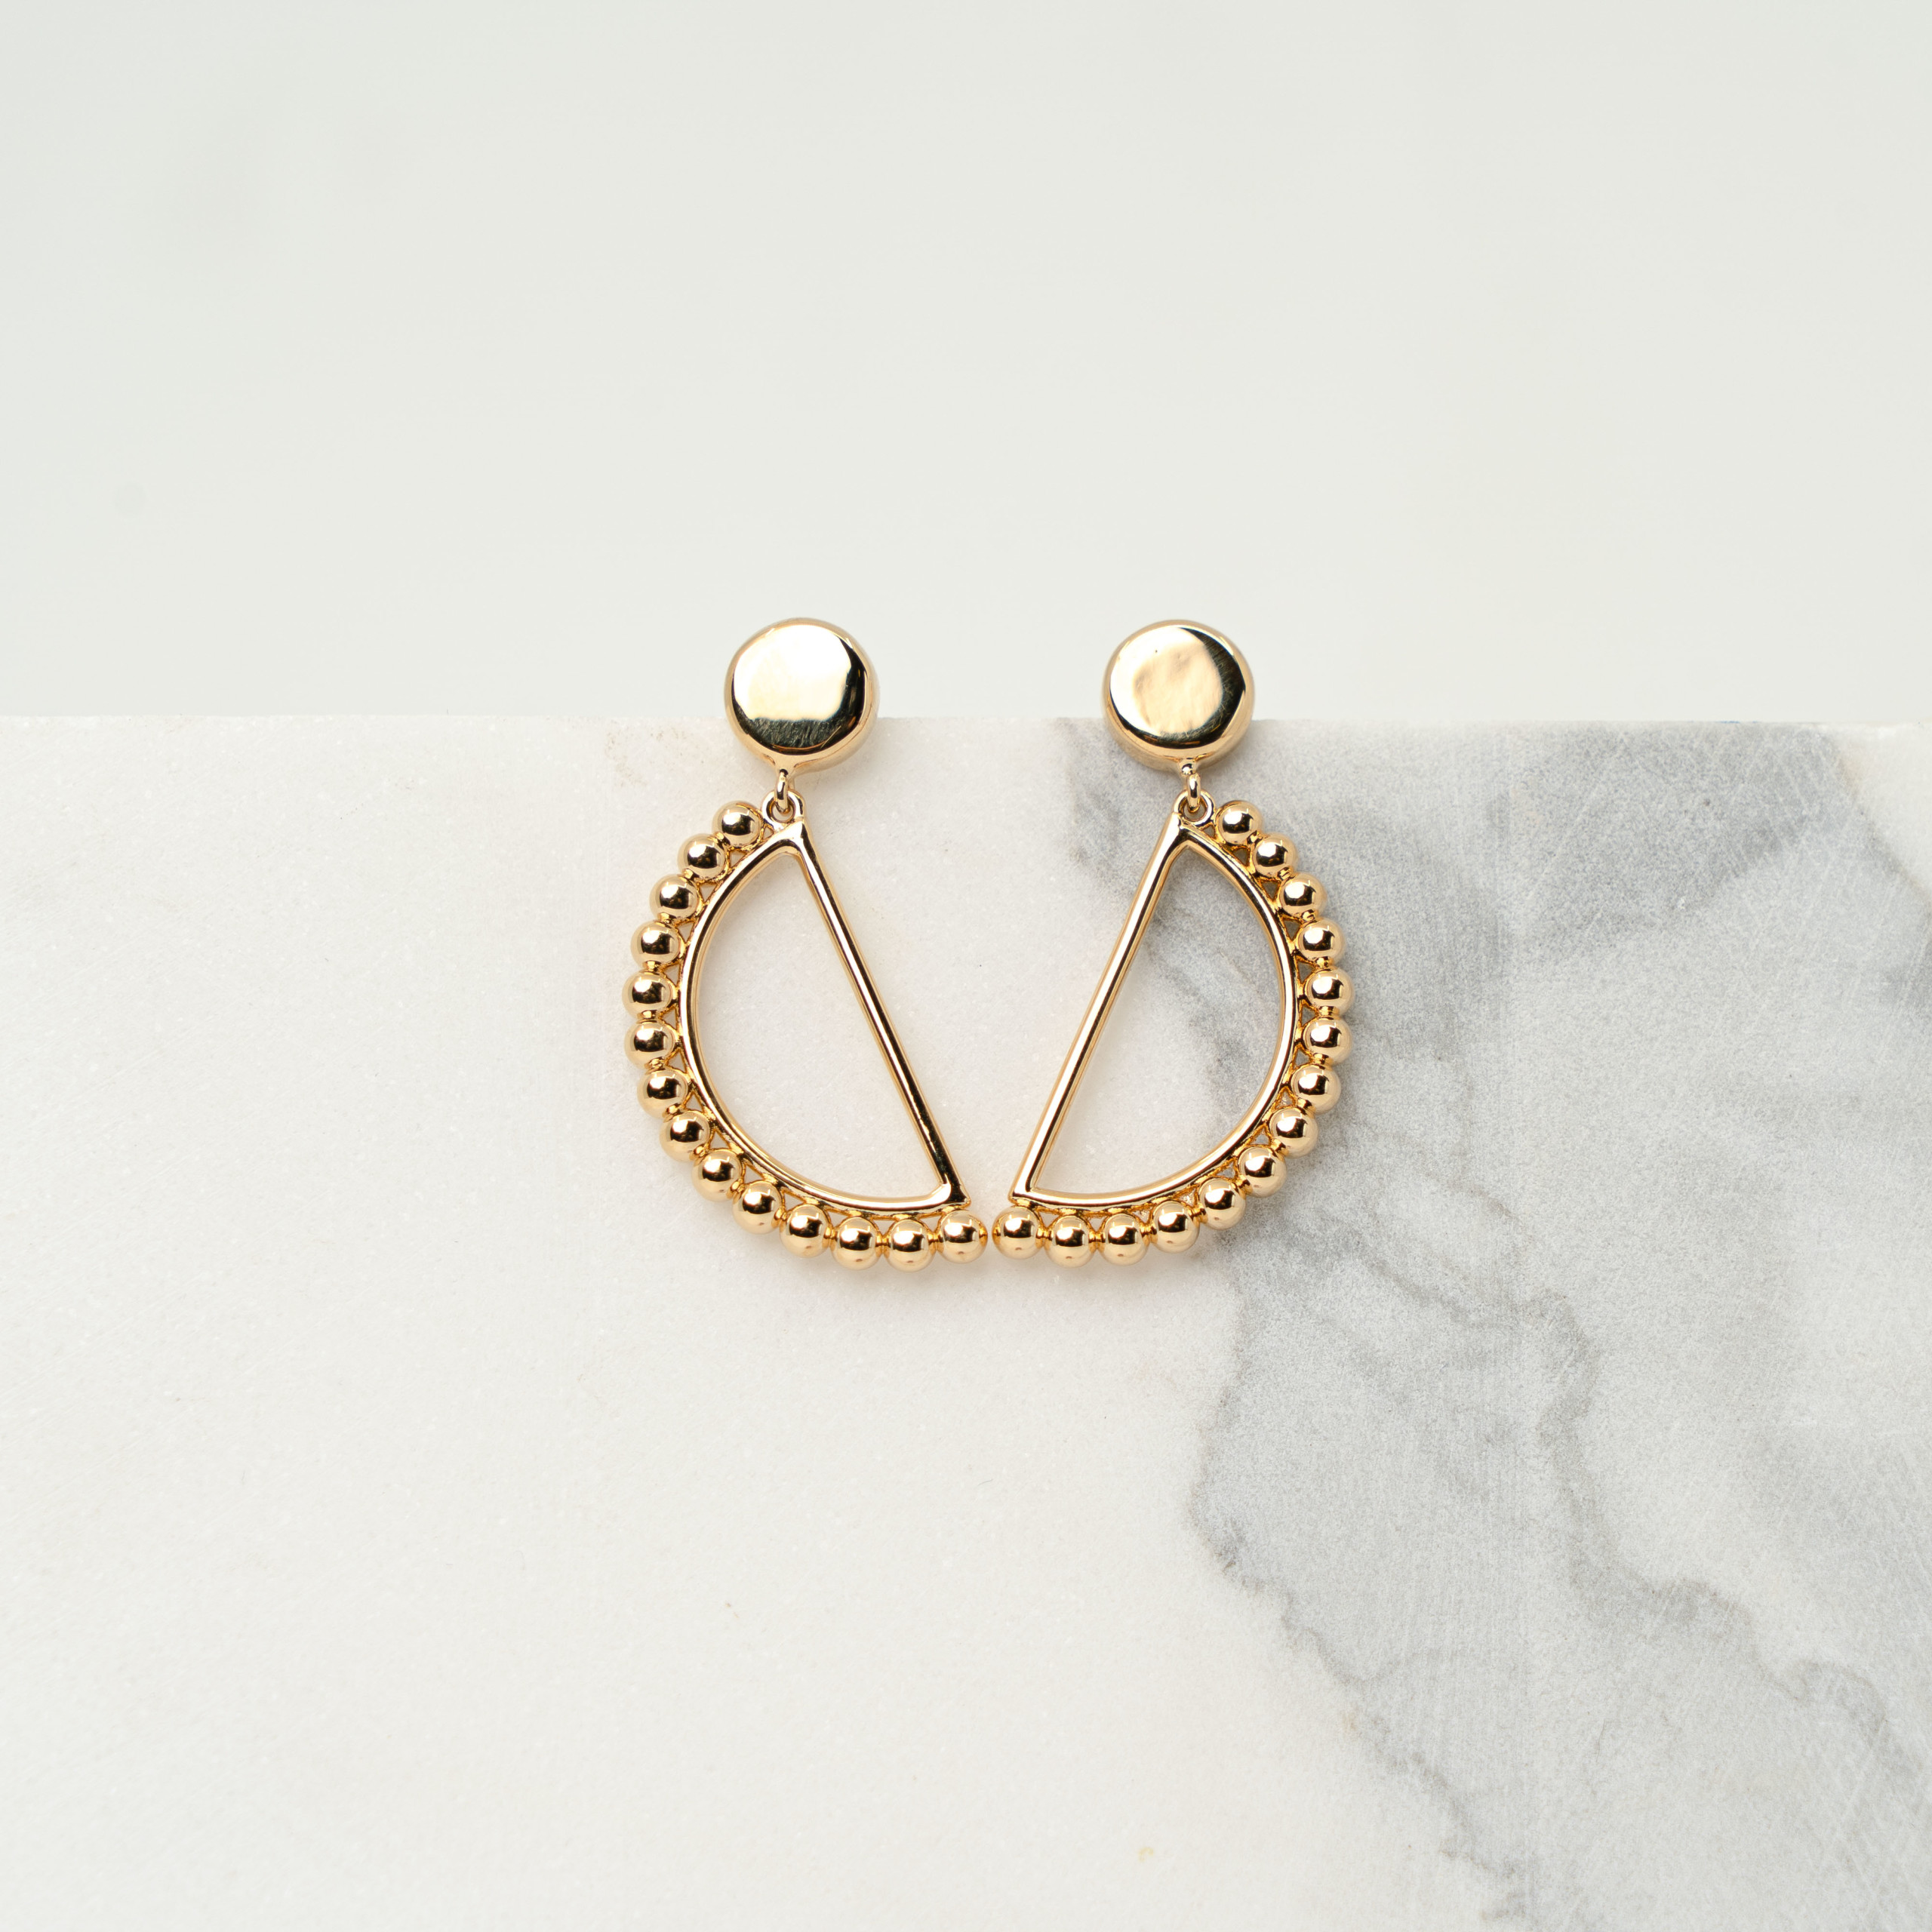 Luna gold earrings